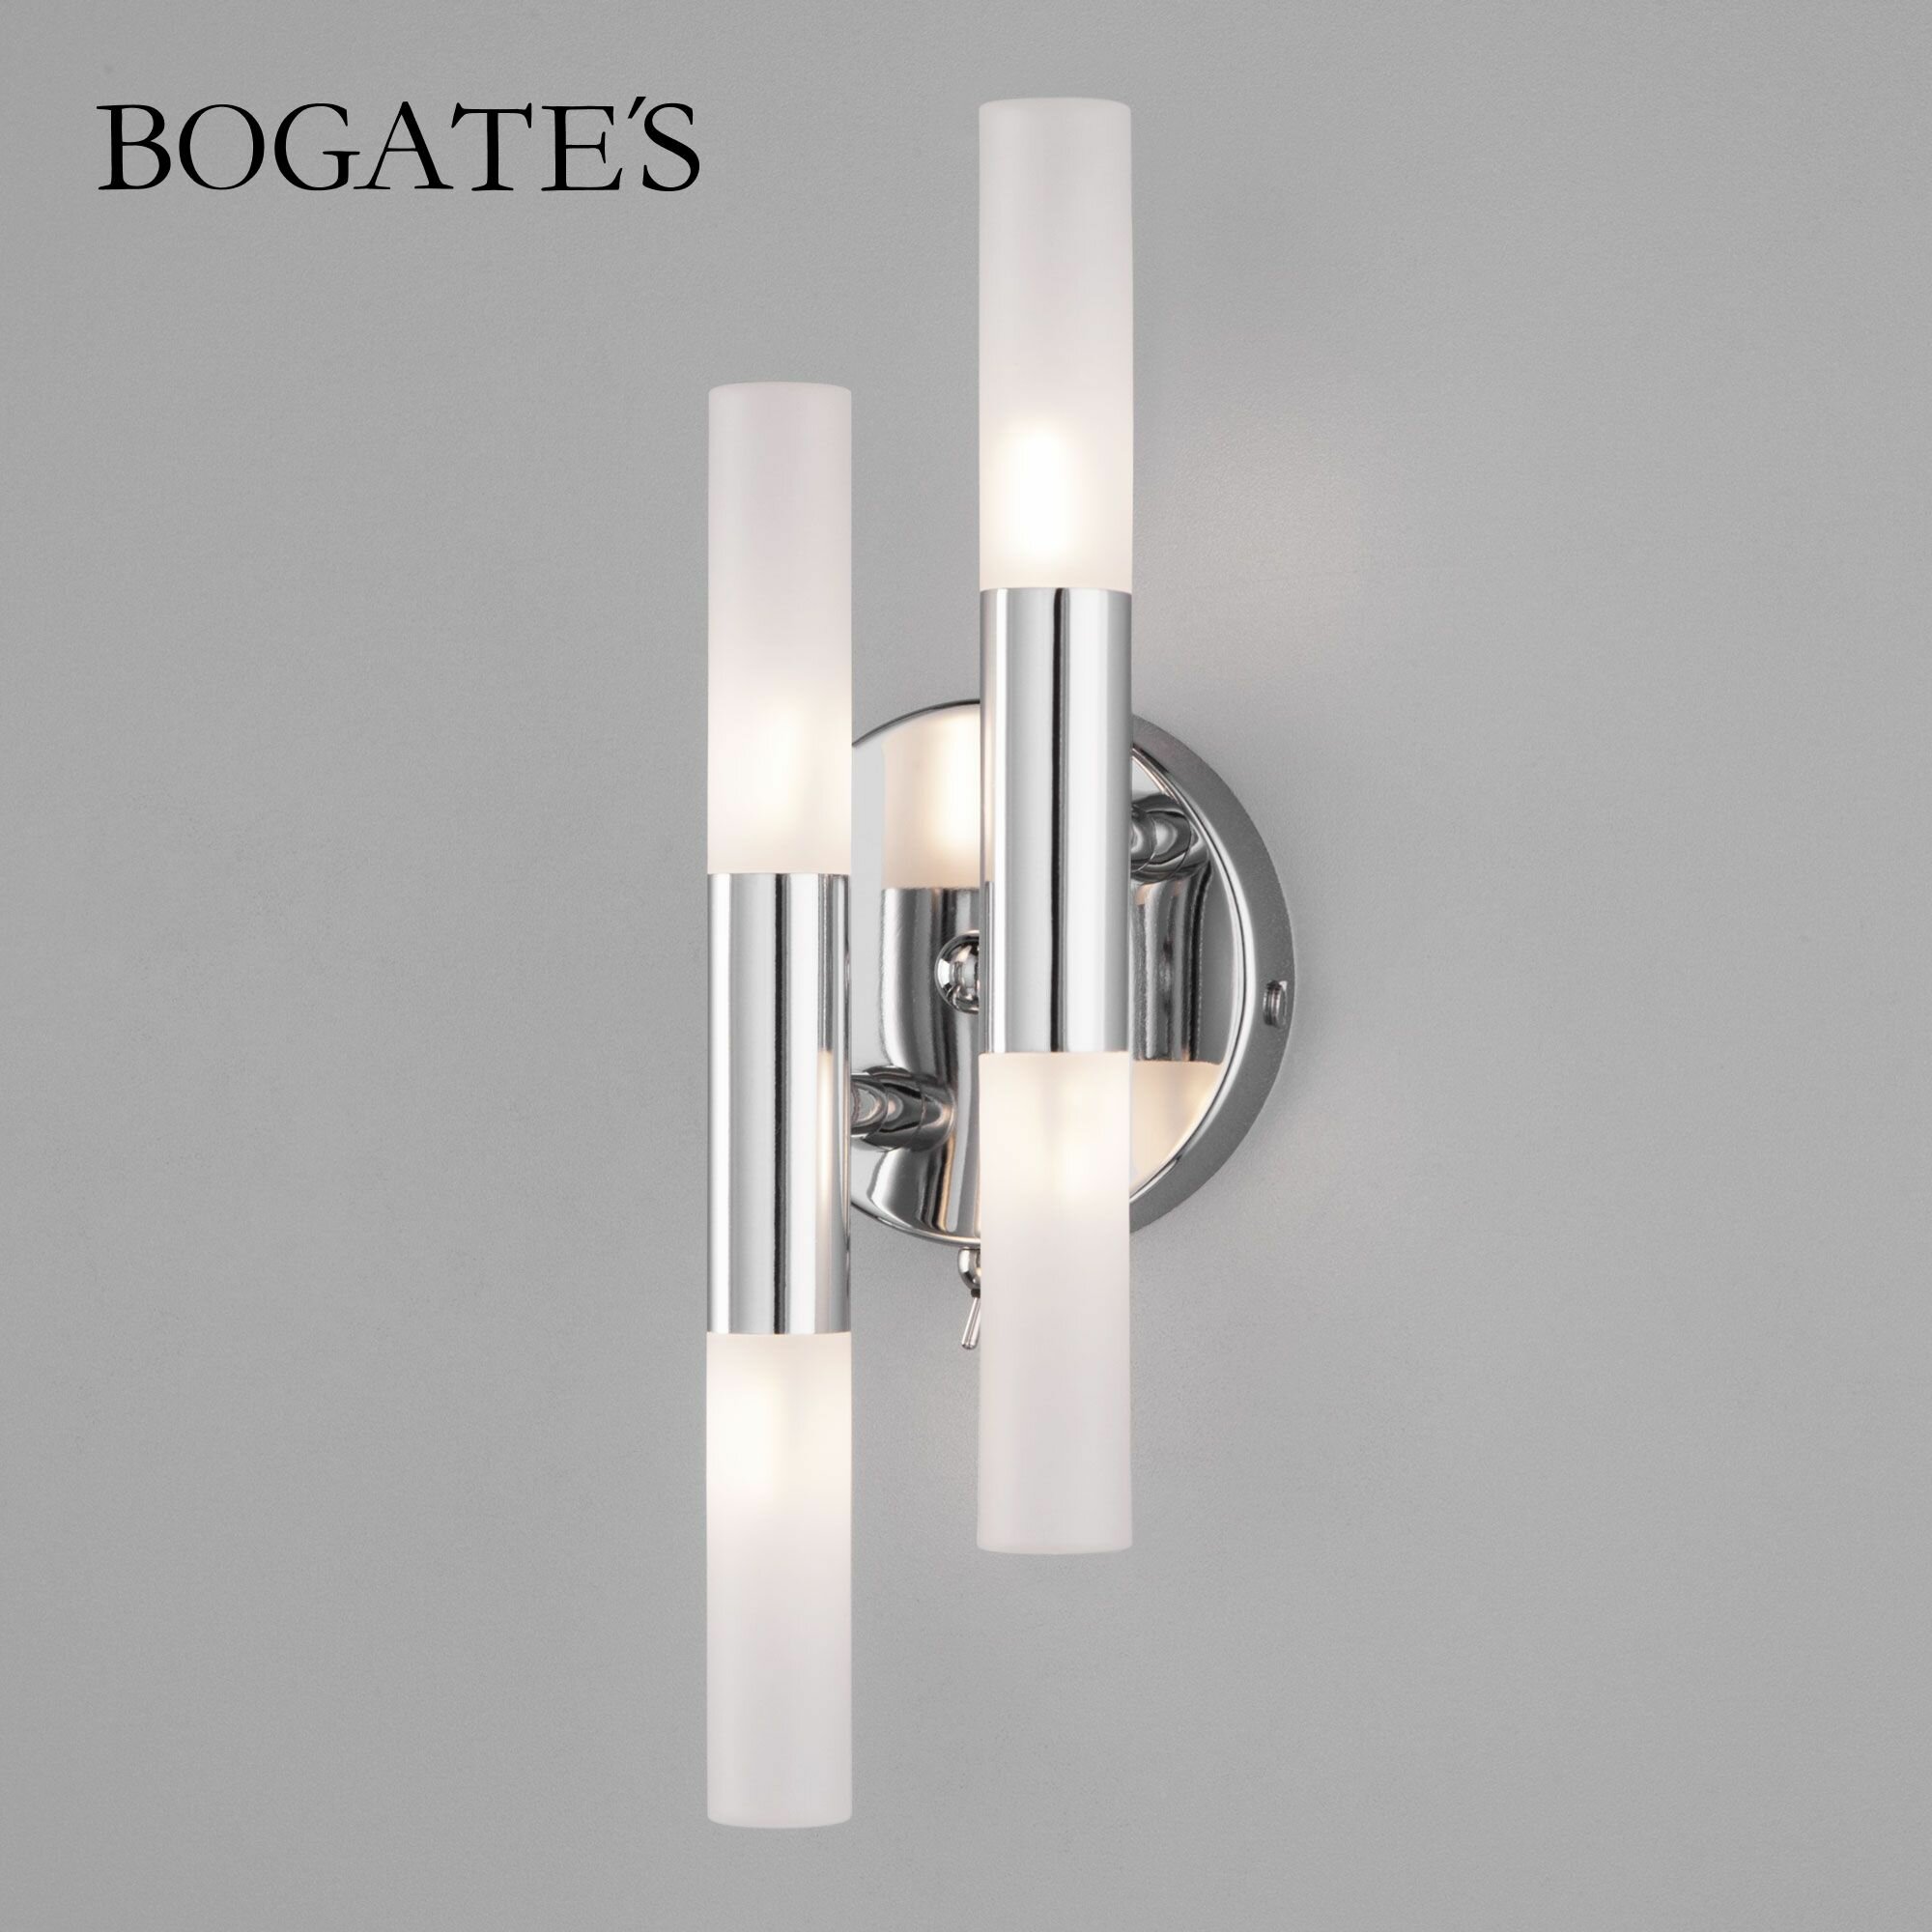 Бра / Настенный светильник Bogate's Bastone 346/4, цвет хром